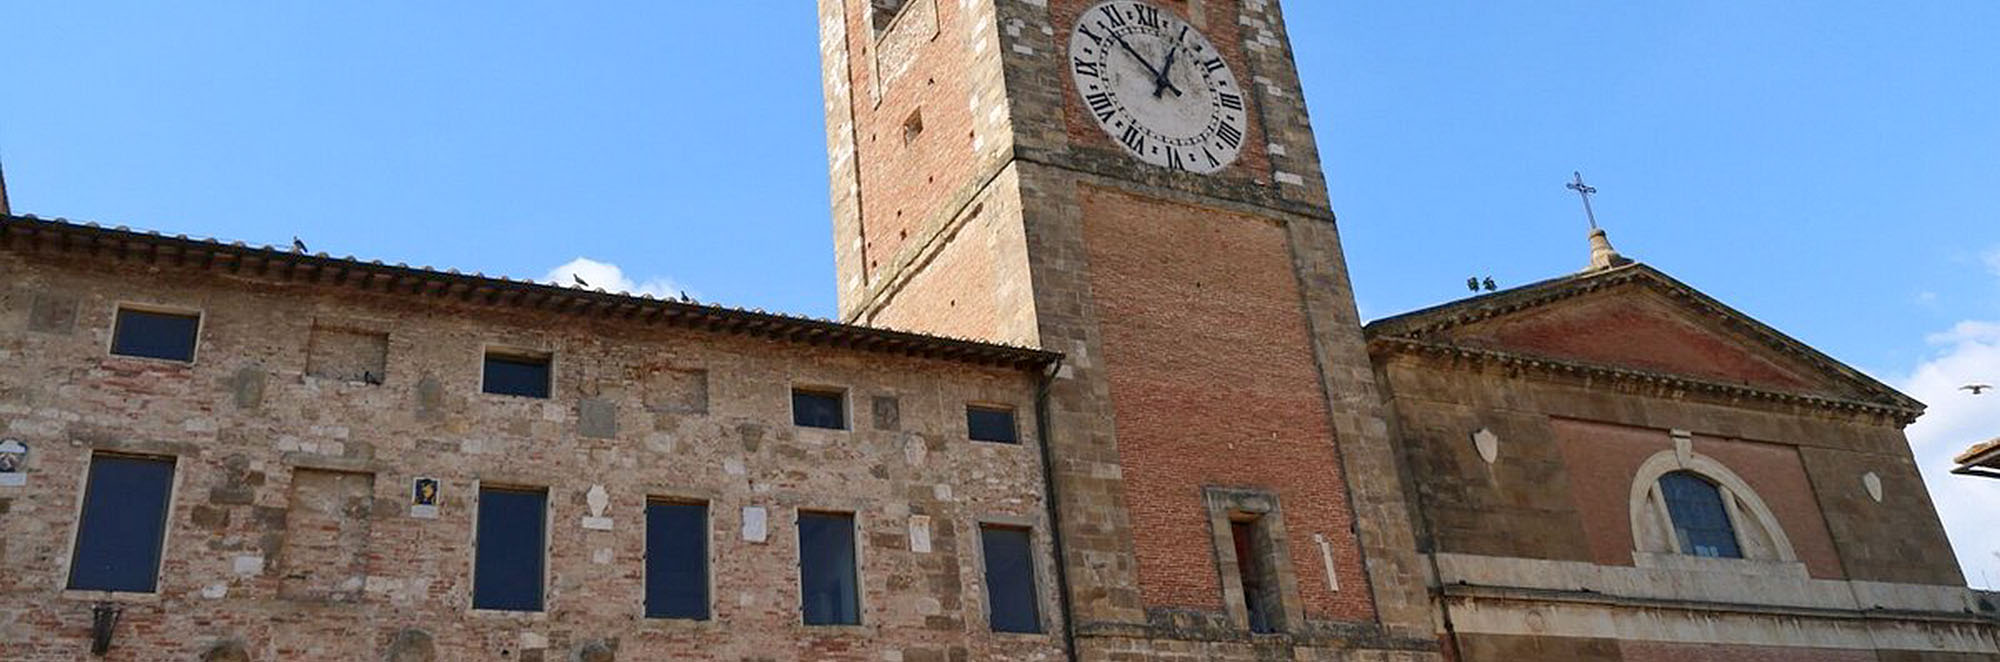 Visit Colle di Val d'Elsa borgo toscano Concattedrale dei Santi Alberto e Marziale - Duomo di Colle